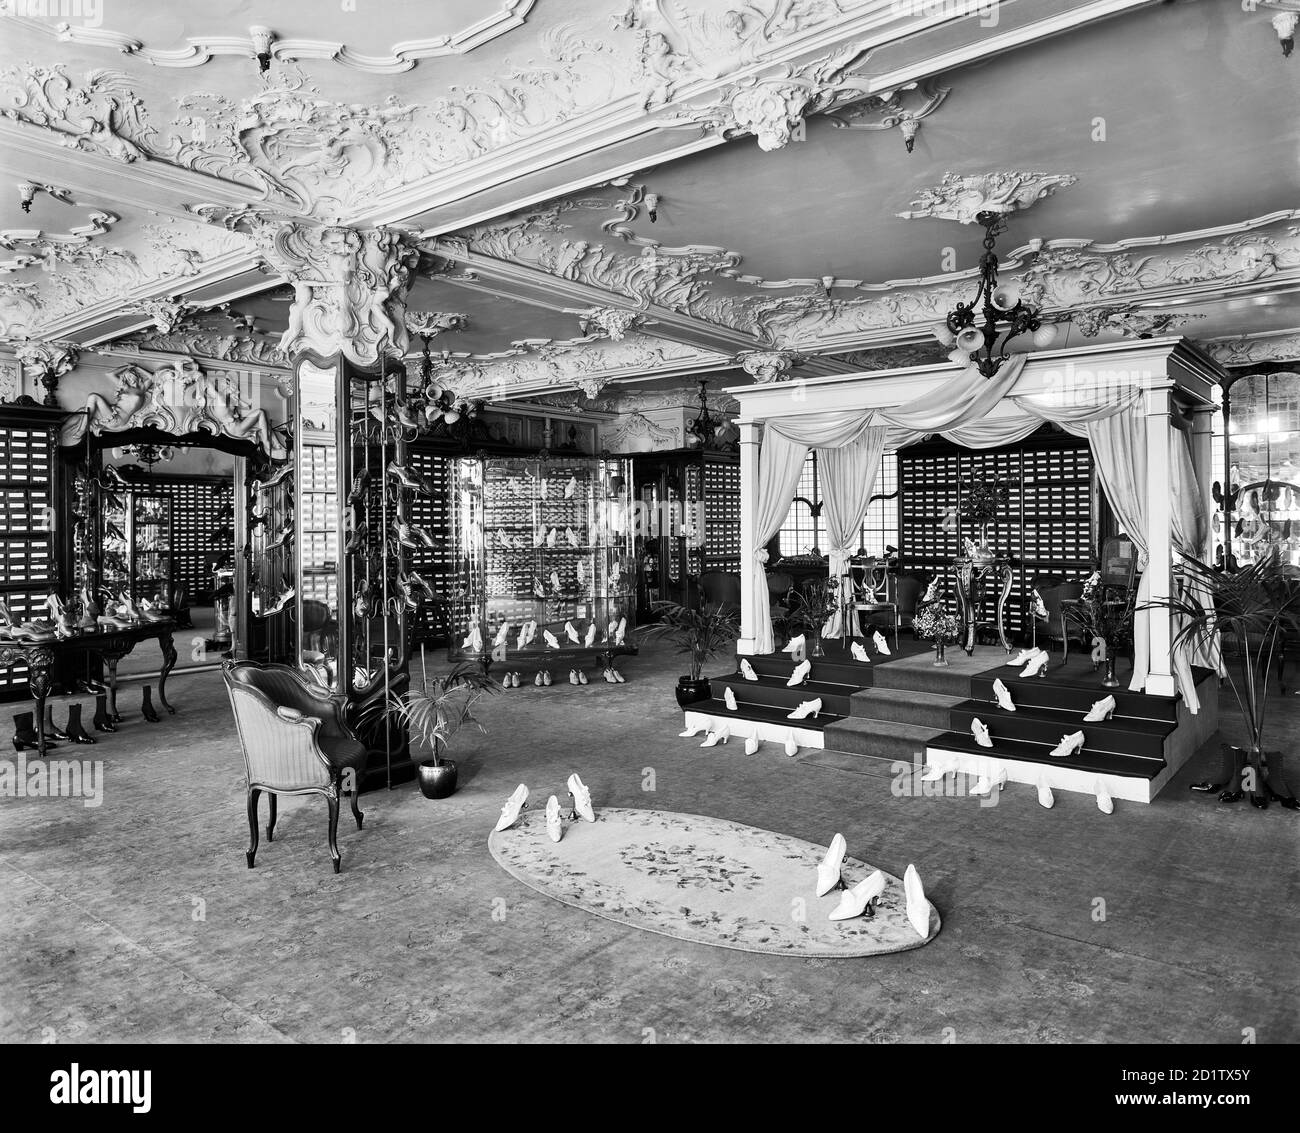 HARRODS, Brompton Road, Knightsbridge, Londres. Luxe baroque du rayon des chaussures pour femmes à Harrods. Le plafond en plâtre très orné et l'utilisation somptueuse de l'espace soulignent la nature exclusive du magasin. Il a été reconstruit à la suite d'un incendie en 1884 et a été prolongé en 1901-5. Photographié par Bedford Lemere & Co en avril 1919. Banque D'Images